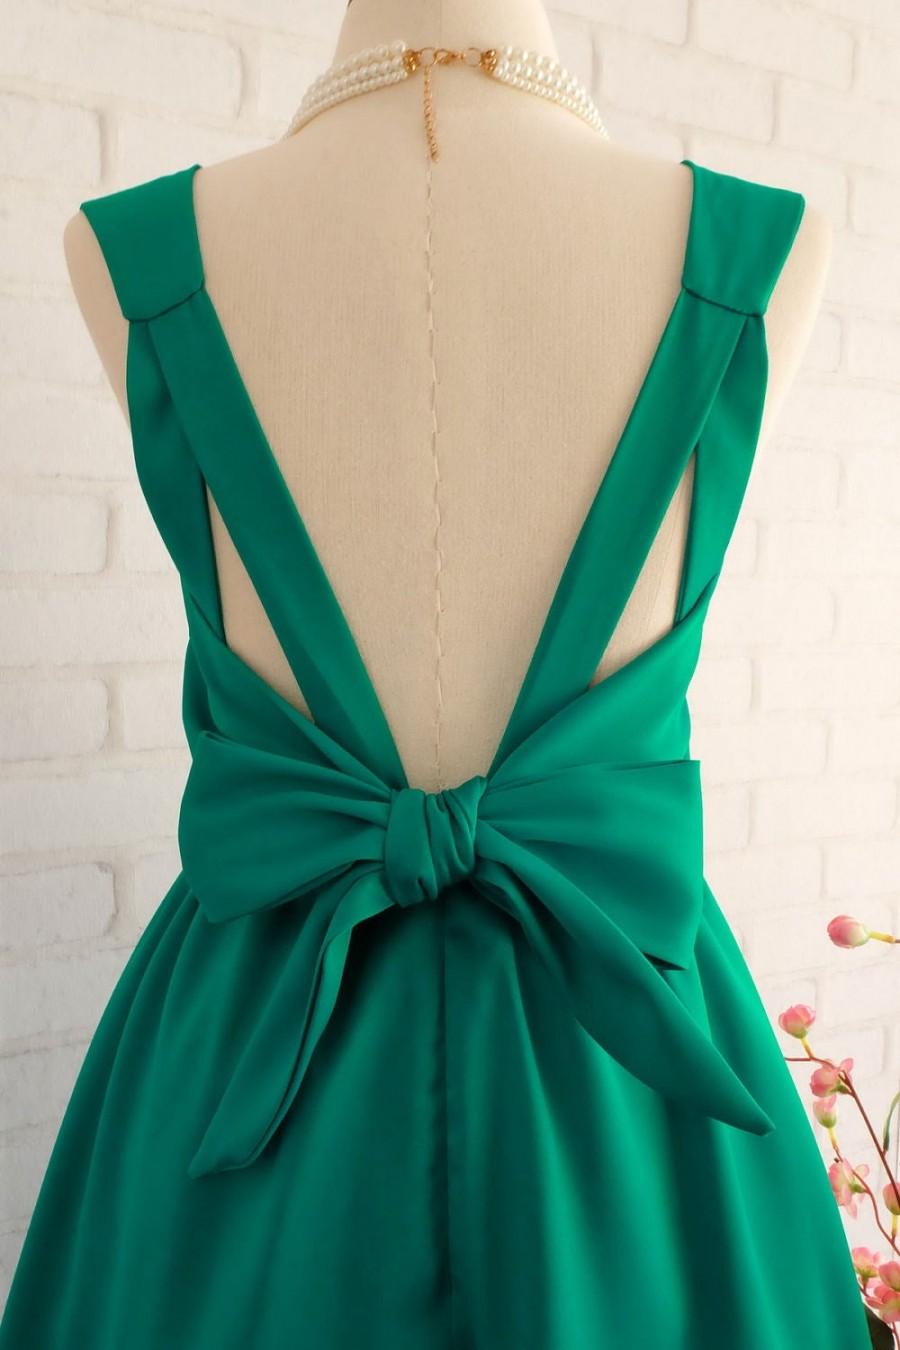 Wedding - Emerald Green dress green Bridesmaid dress Wedding Prom dress Cocktail Party dress Evening dress Backless bow dress